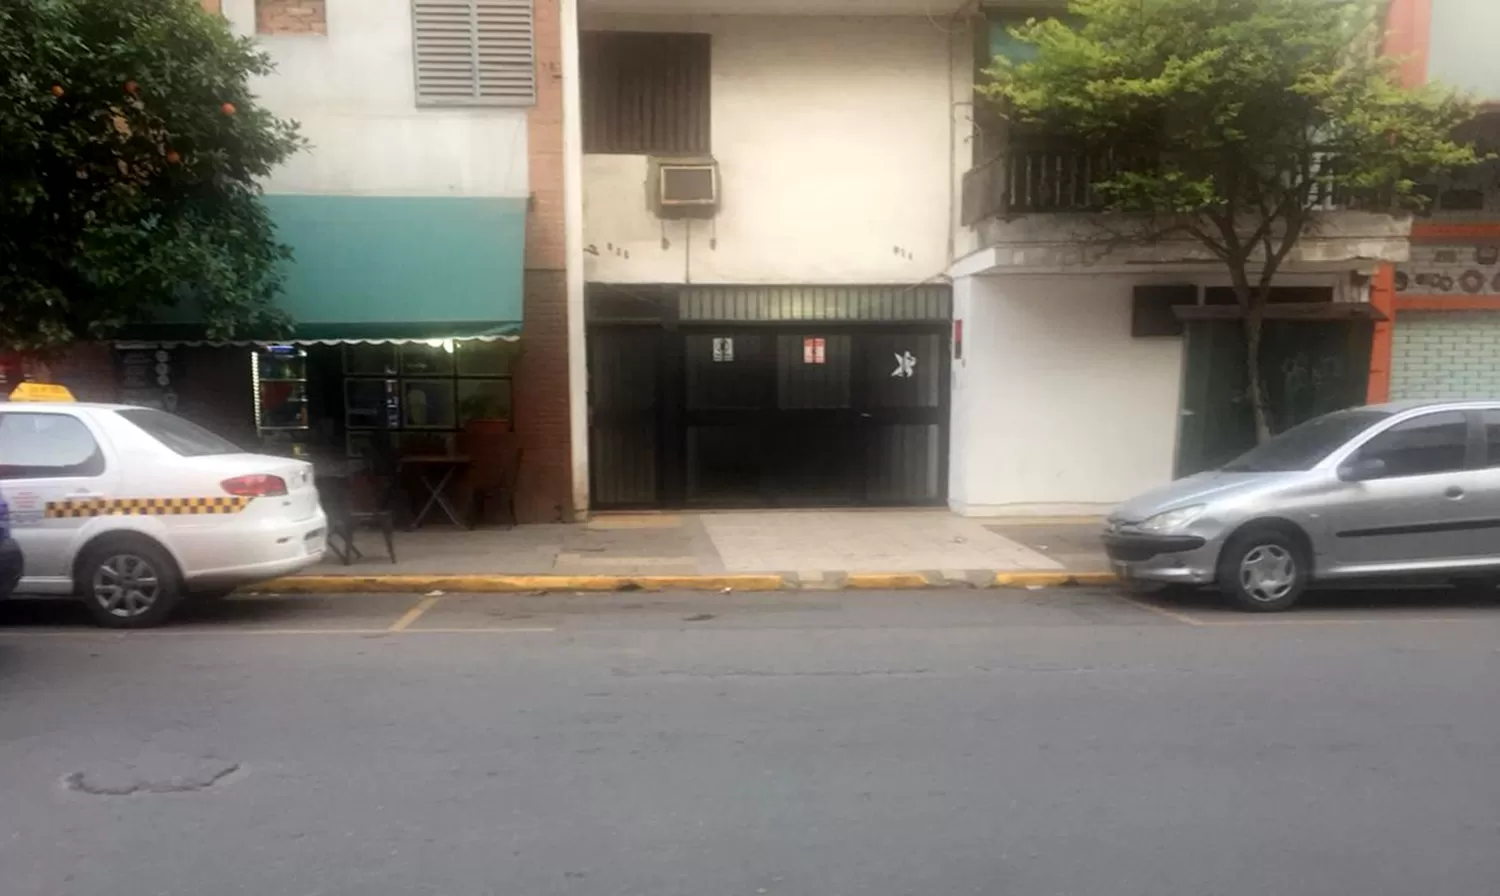 PARA DE TAXI. El portón tiene dos carteles que dicen Prohibido estacionar.